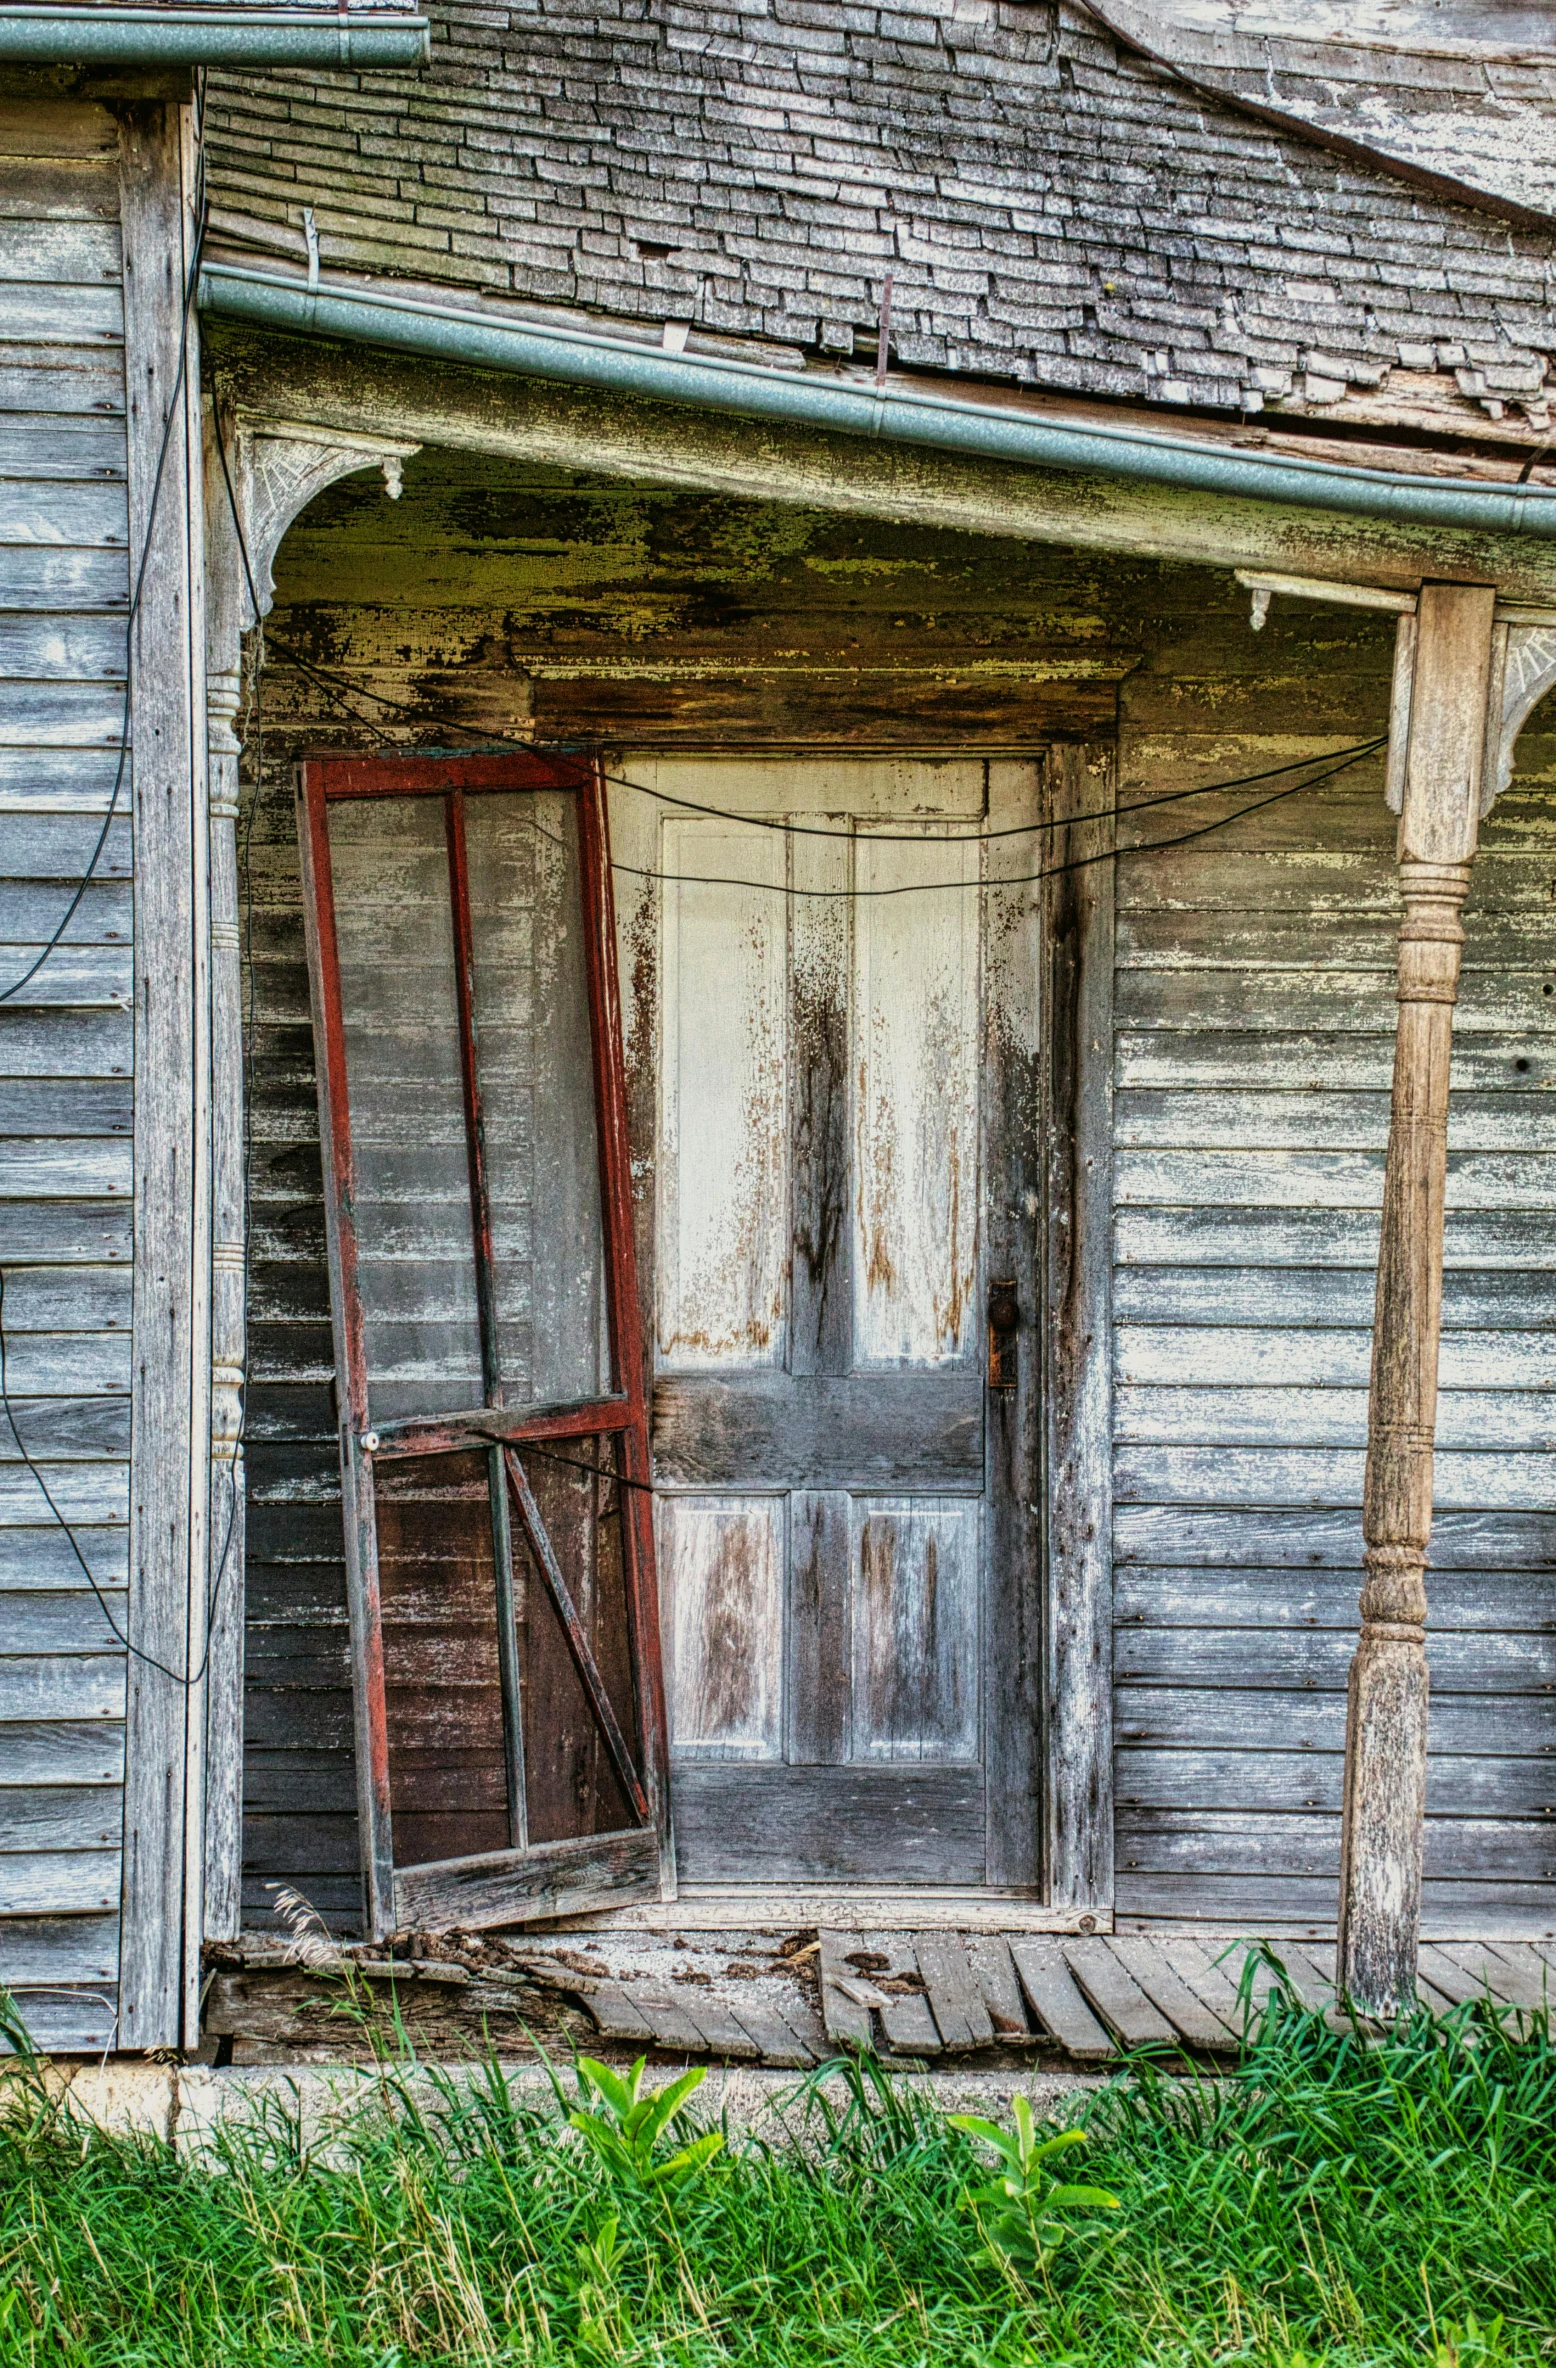 an old, run down building with a broken door